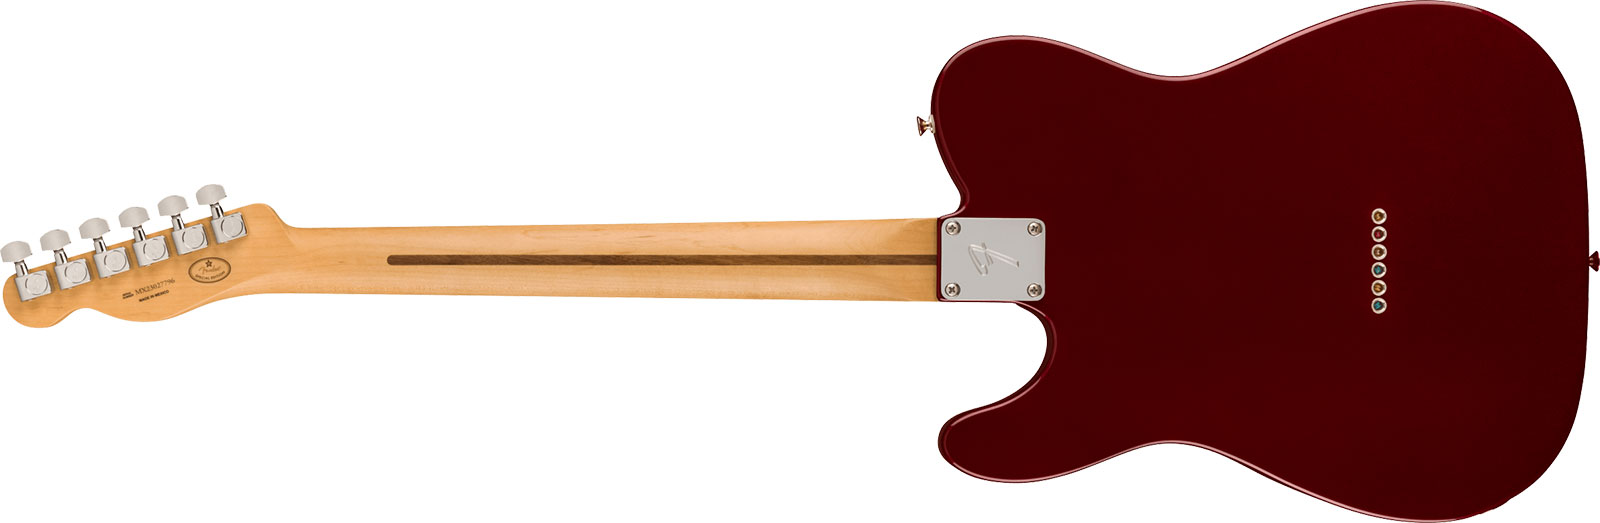 Fender Tele Player Ltd Mex 2s Pure Vintage Ht Eb - Oxblood - Guitarra eléctrica con forma de tel - Variation 1